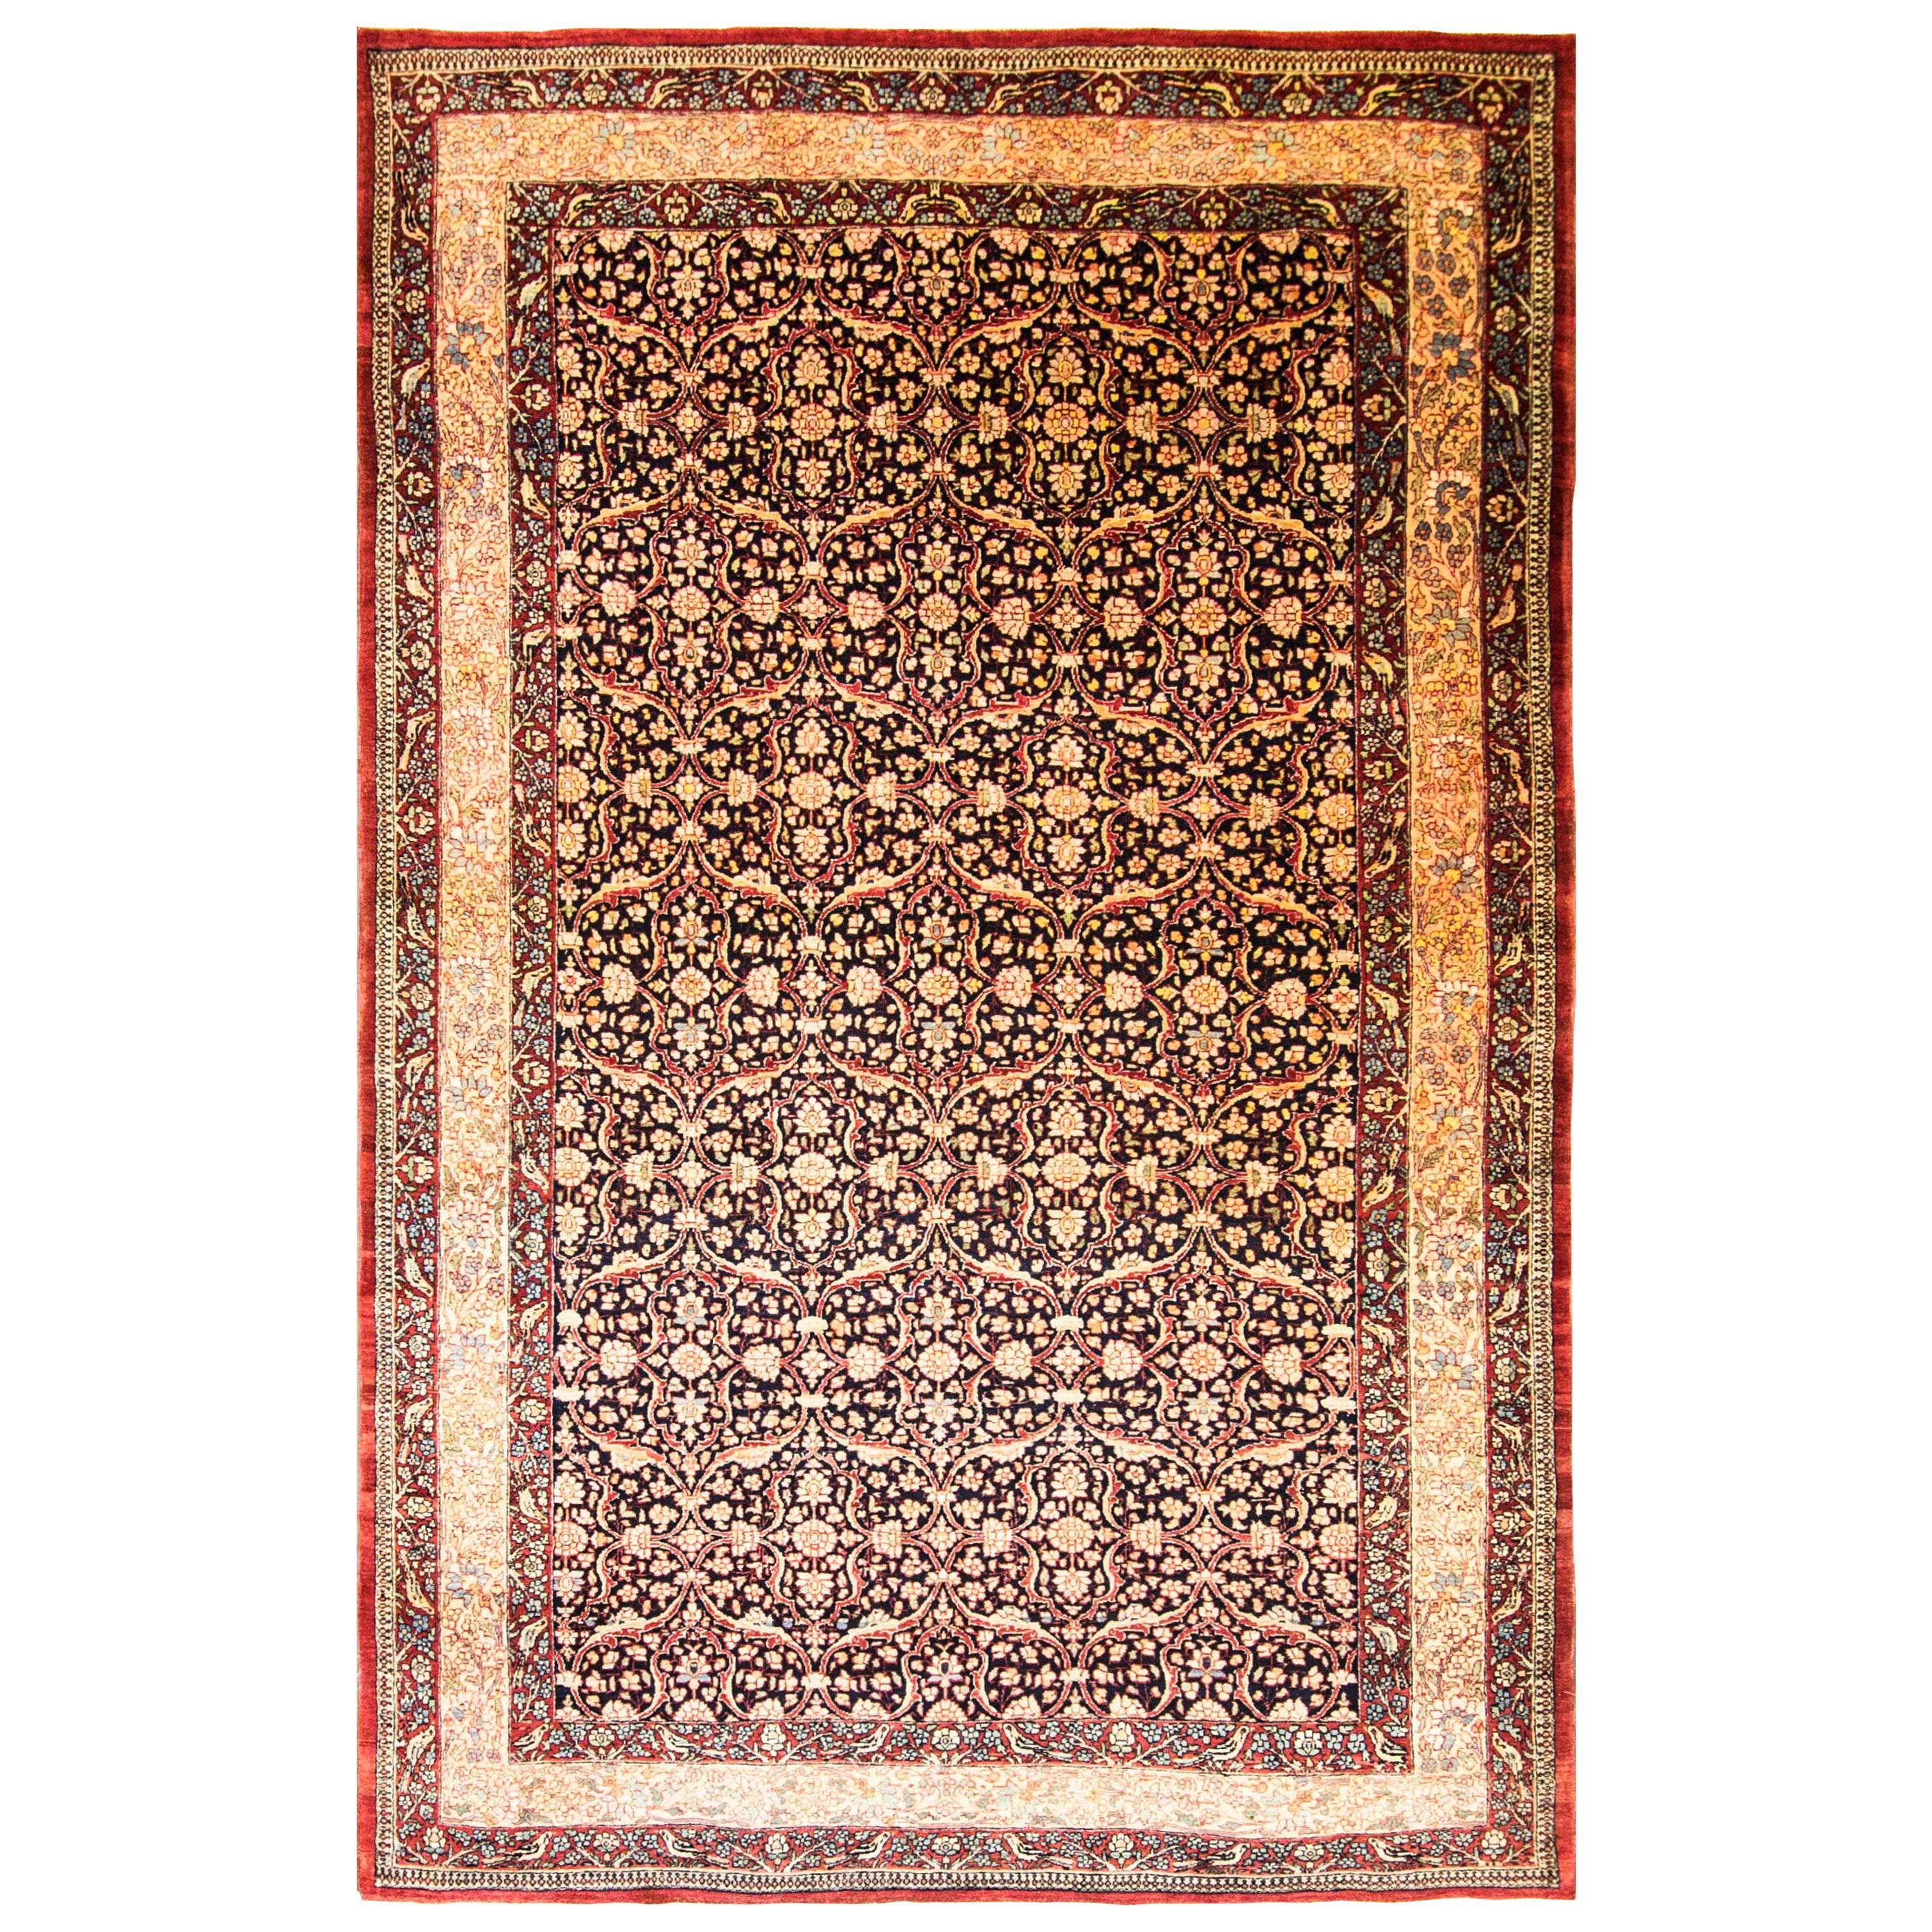 Antique Persian Tehran Carpet